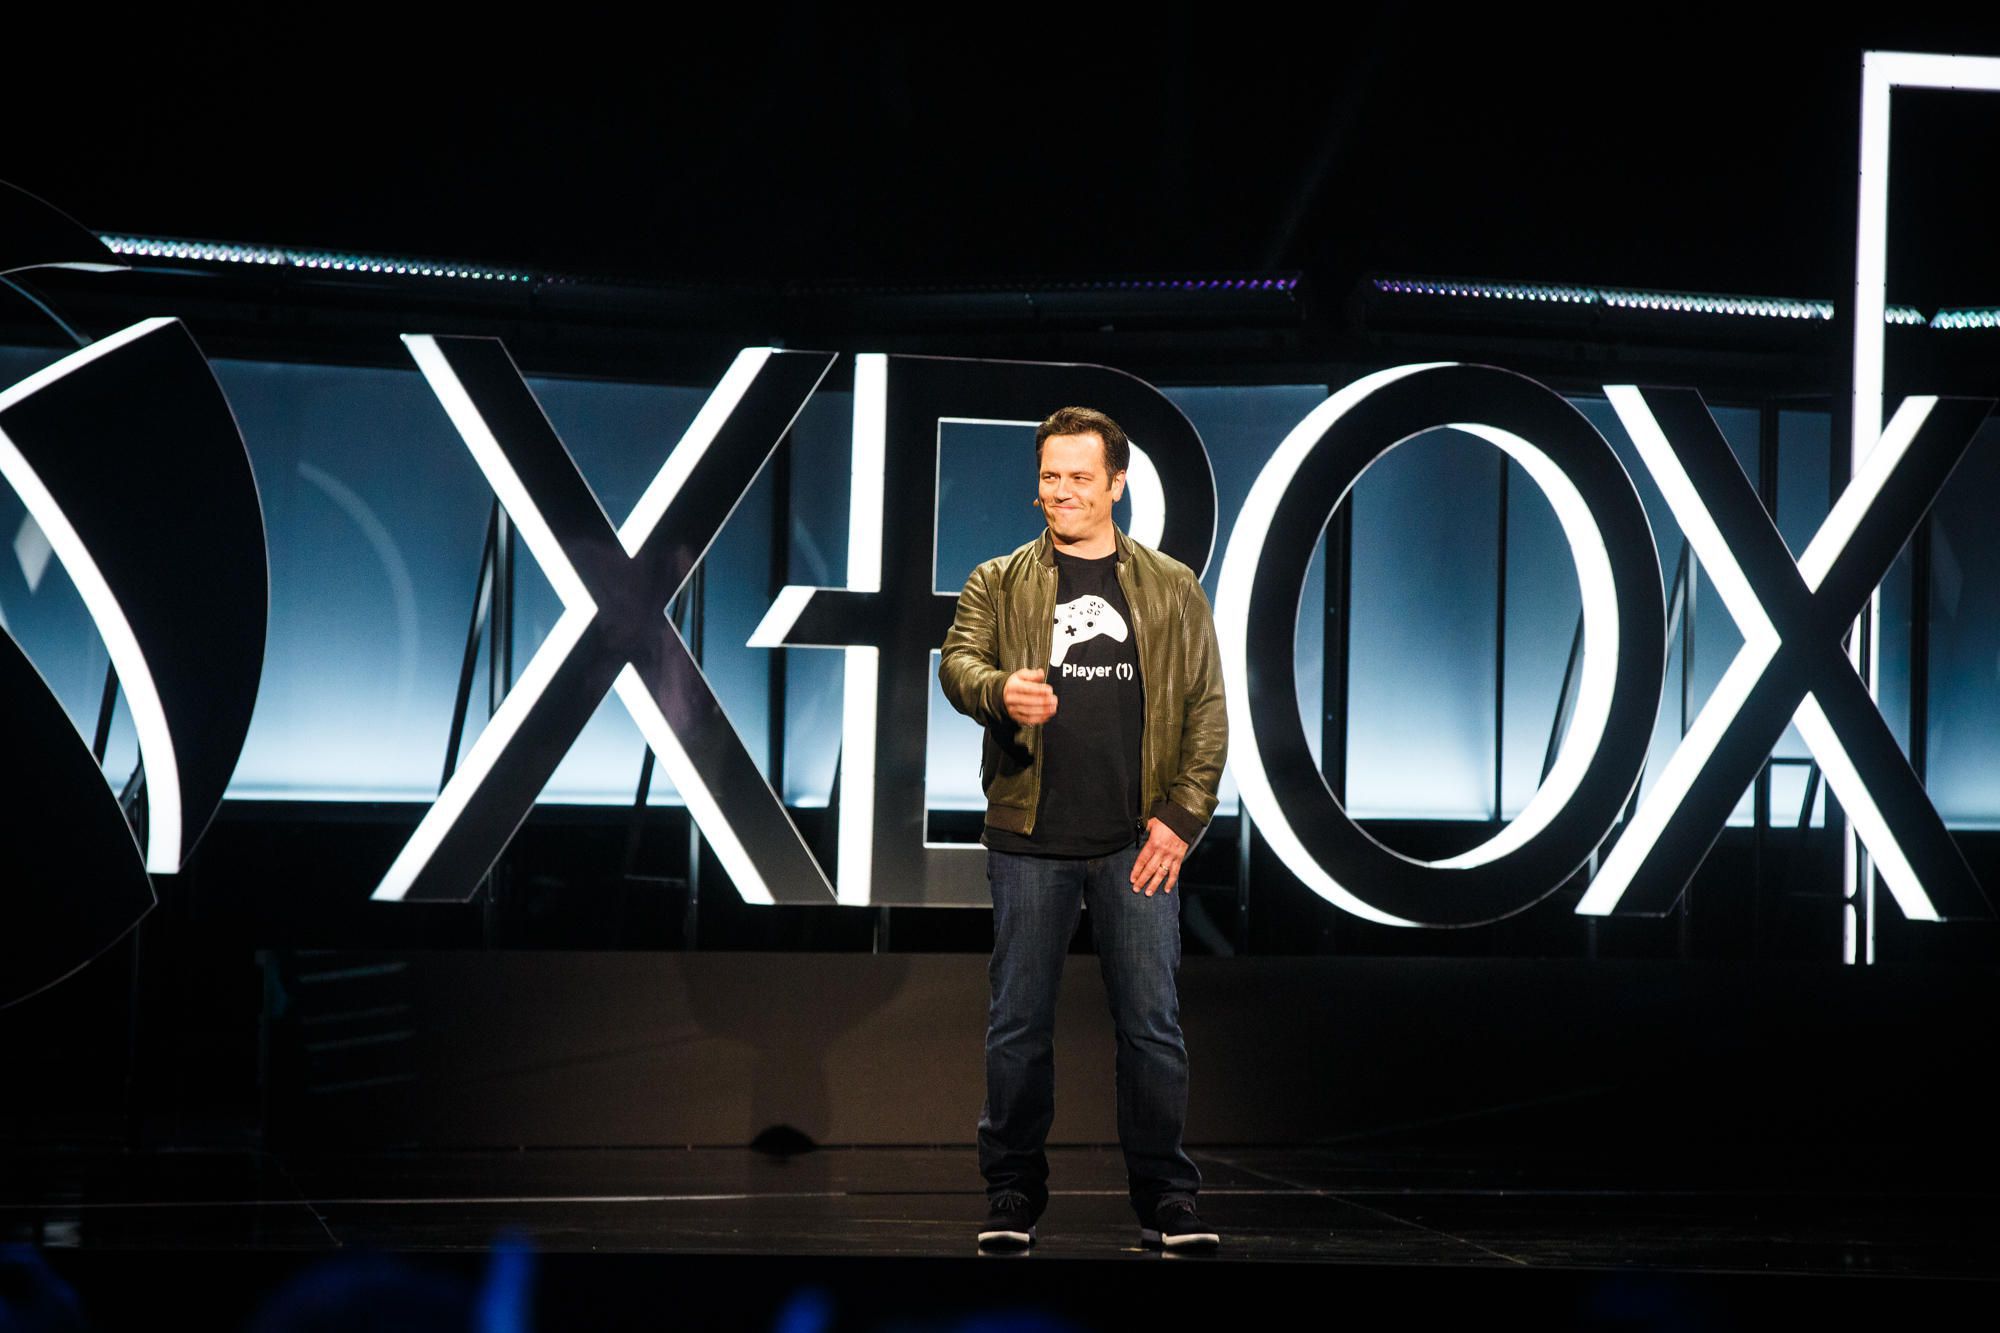 Phil Spencer ante la ausencia de Sony en la E3 2019: “La E3 no es tan buena cuando no están”